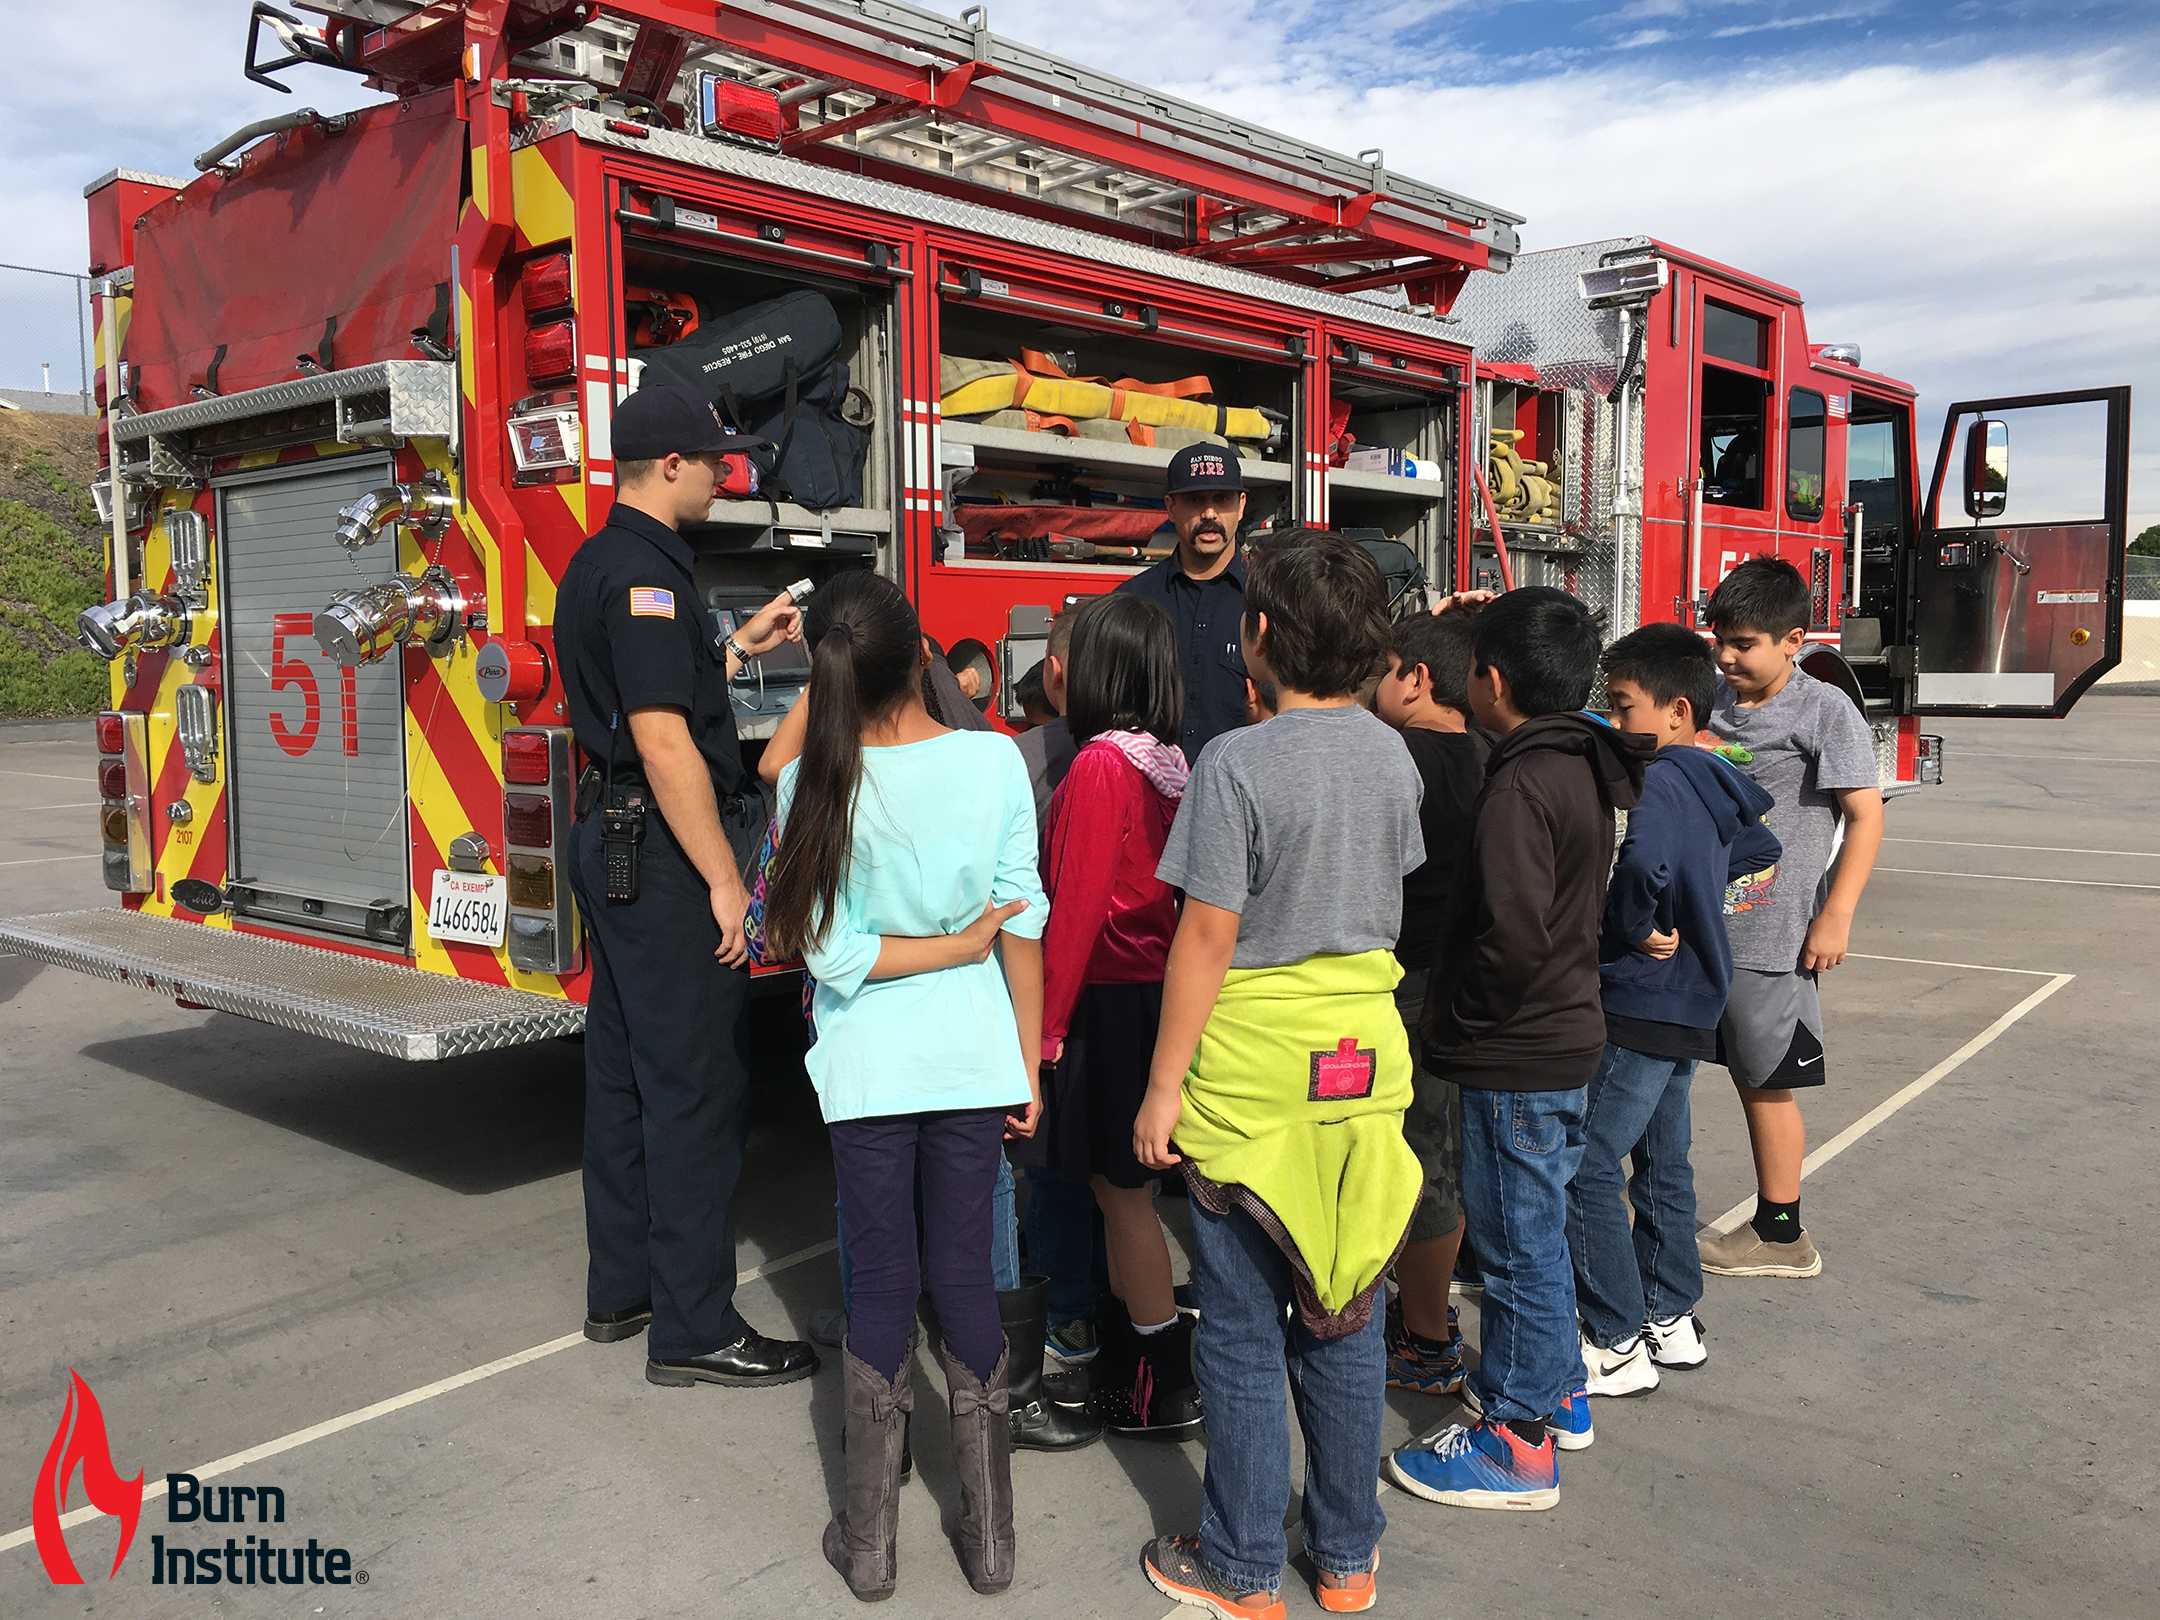 Children gathered around a fire truck